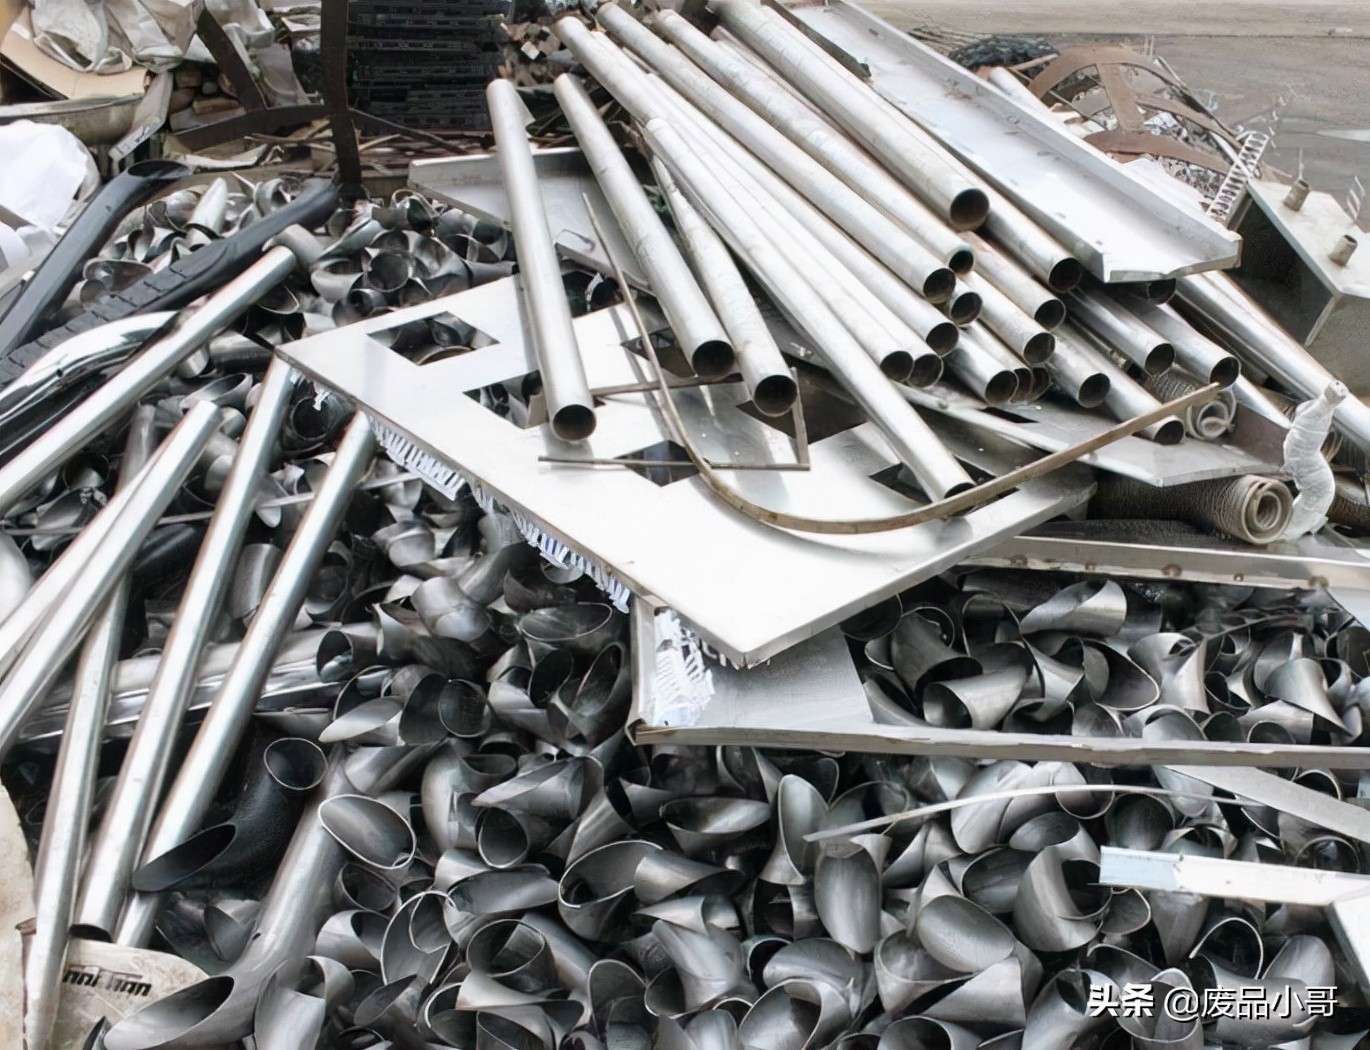 废不锈钢回收价格2021年11月6日废不锈钢回收价格调整信息